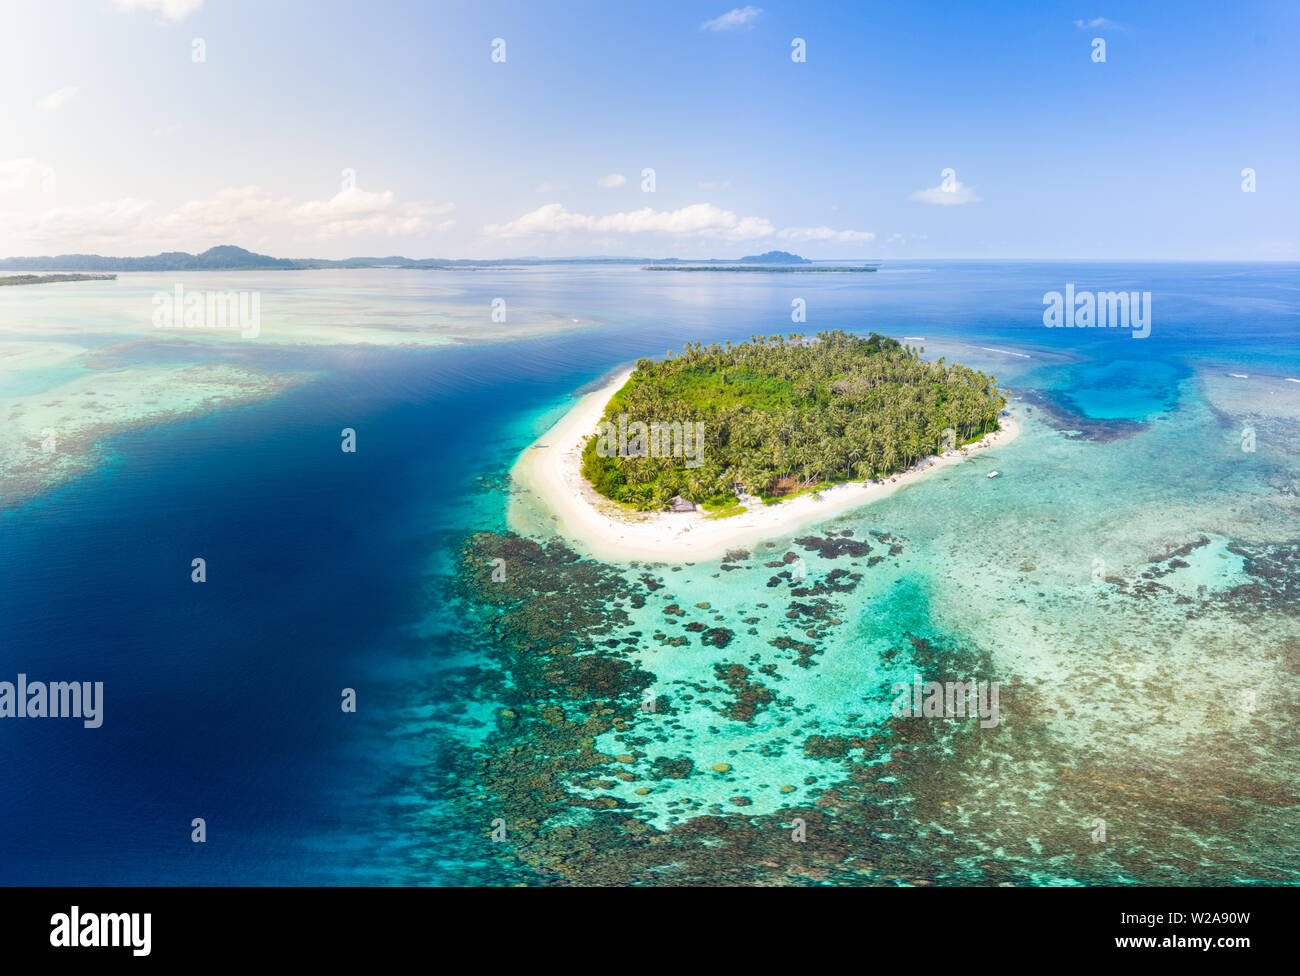 Luftaufnahme Banyak Inseln Sumatra tropischen Archipel in Indonesien, Coral Reef Beach, türkisfarbenem Wasser. Reiseziel, Tauchen Schnorcheln, uncontamin Stockfoto